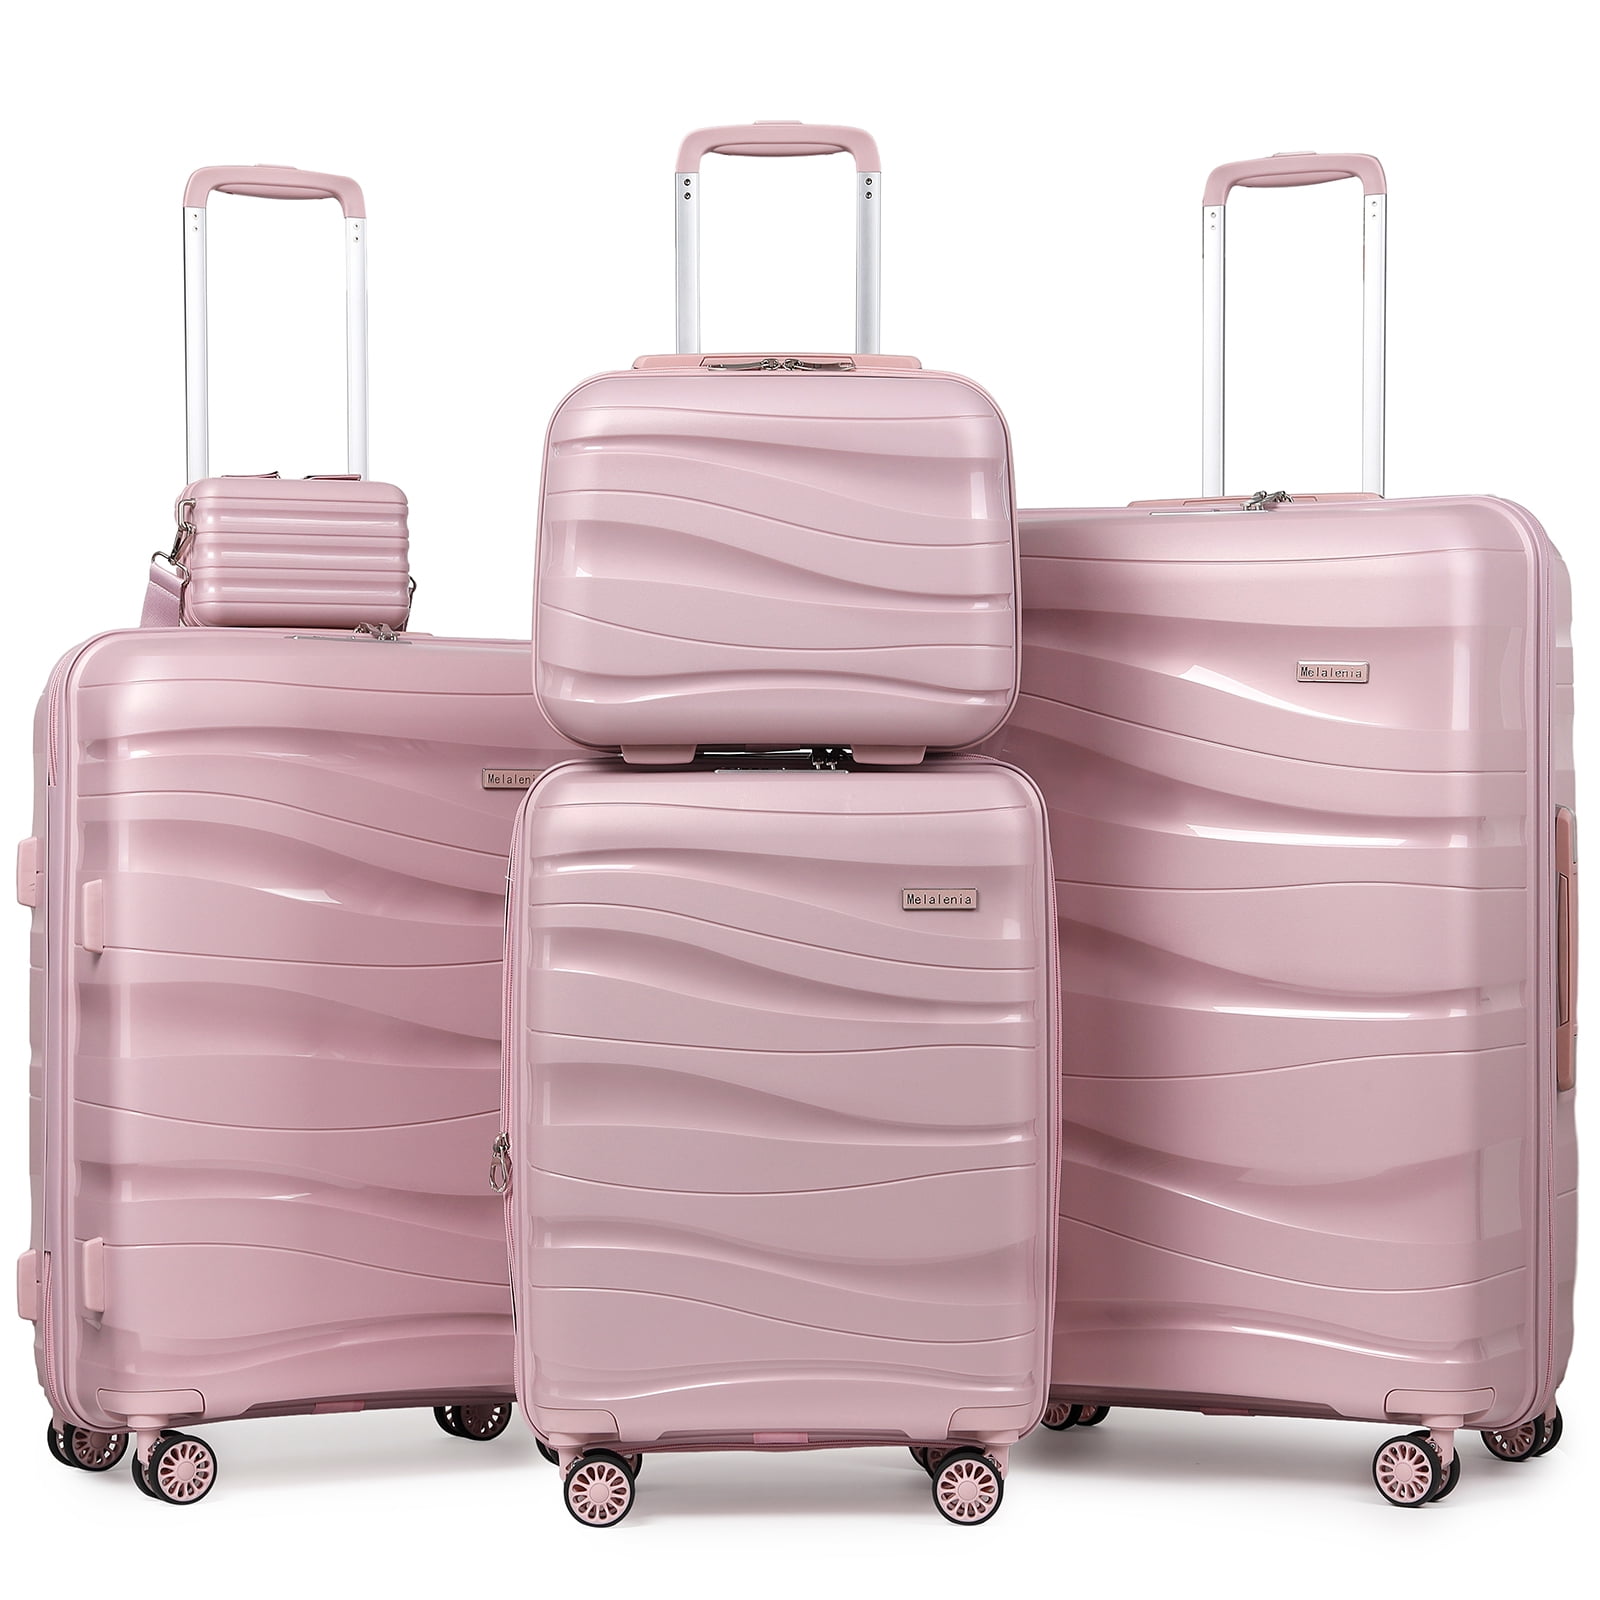 Melalenia Luggage Sets 5 Piece Suitcase Set,Hard